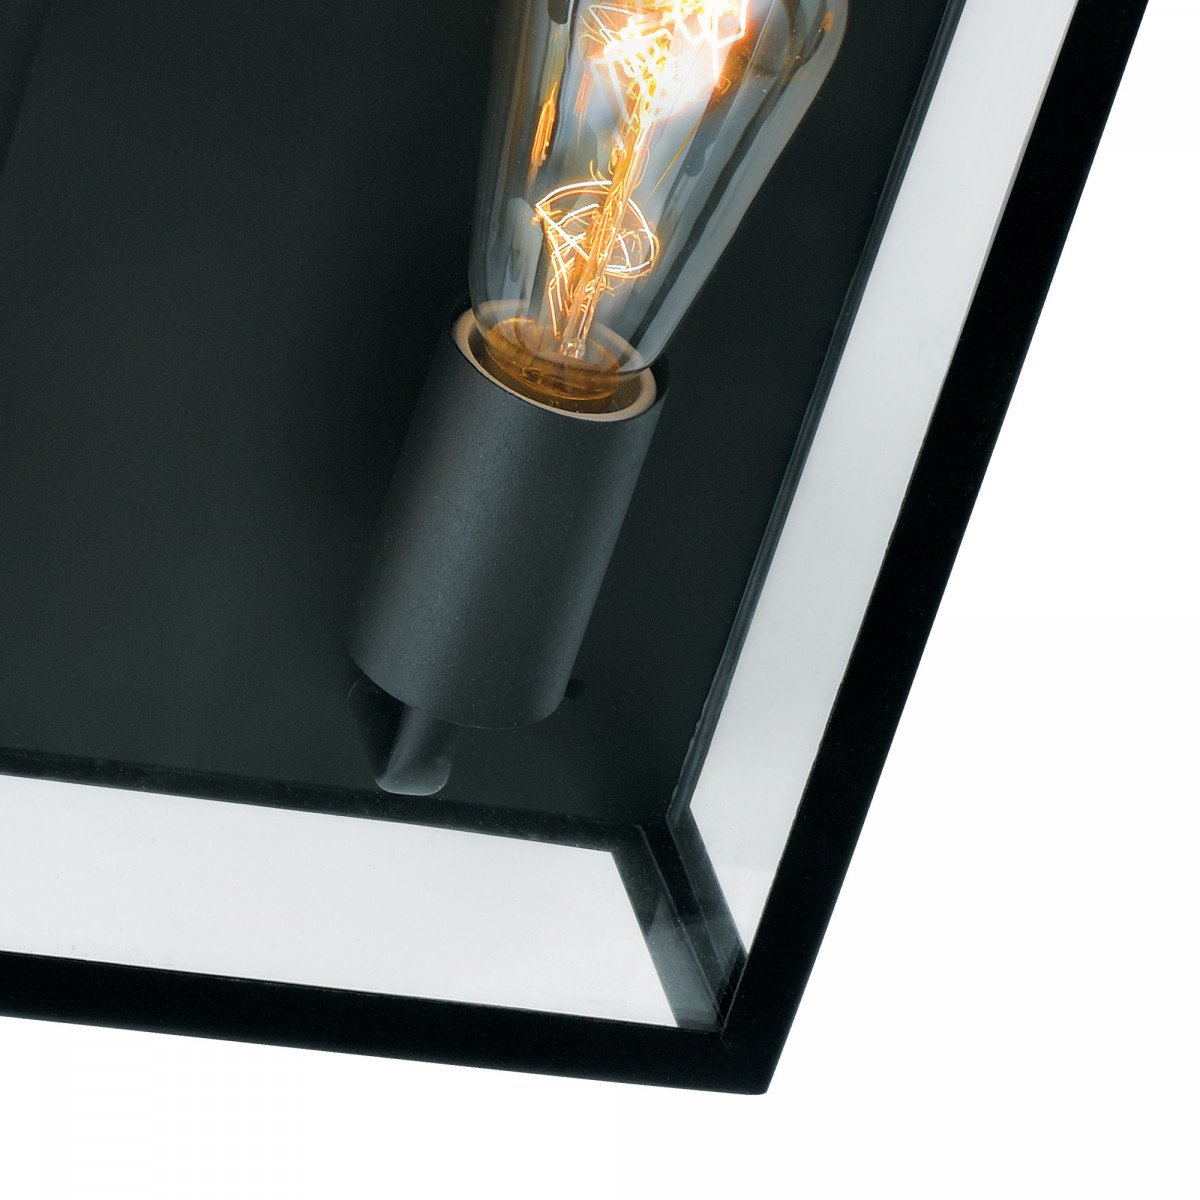 Plafonnier au design élégant et moderne, cadre carré en acier inoxydable avec revêtement anodisé, vitrage transparent, 2 ampoules x E27 visibles, peut également être accroché comme applique murale